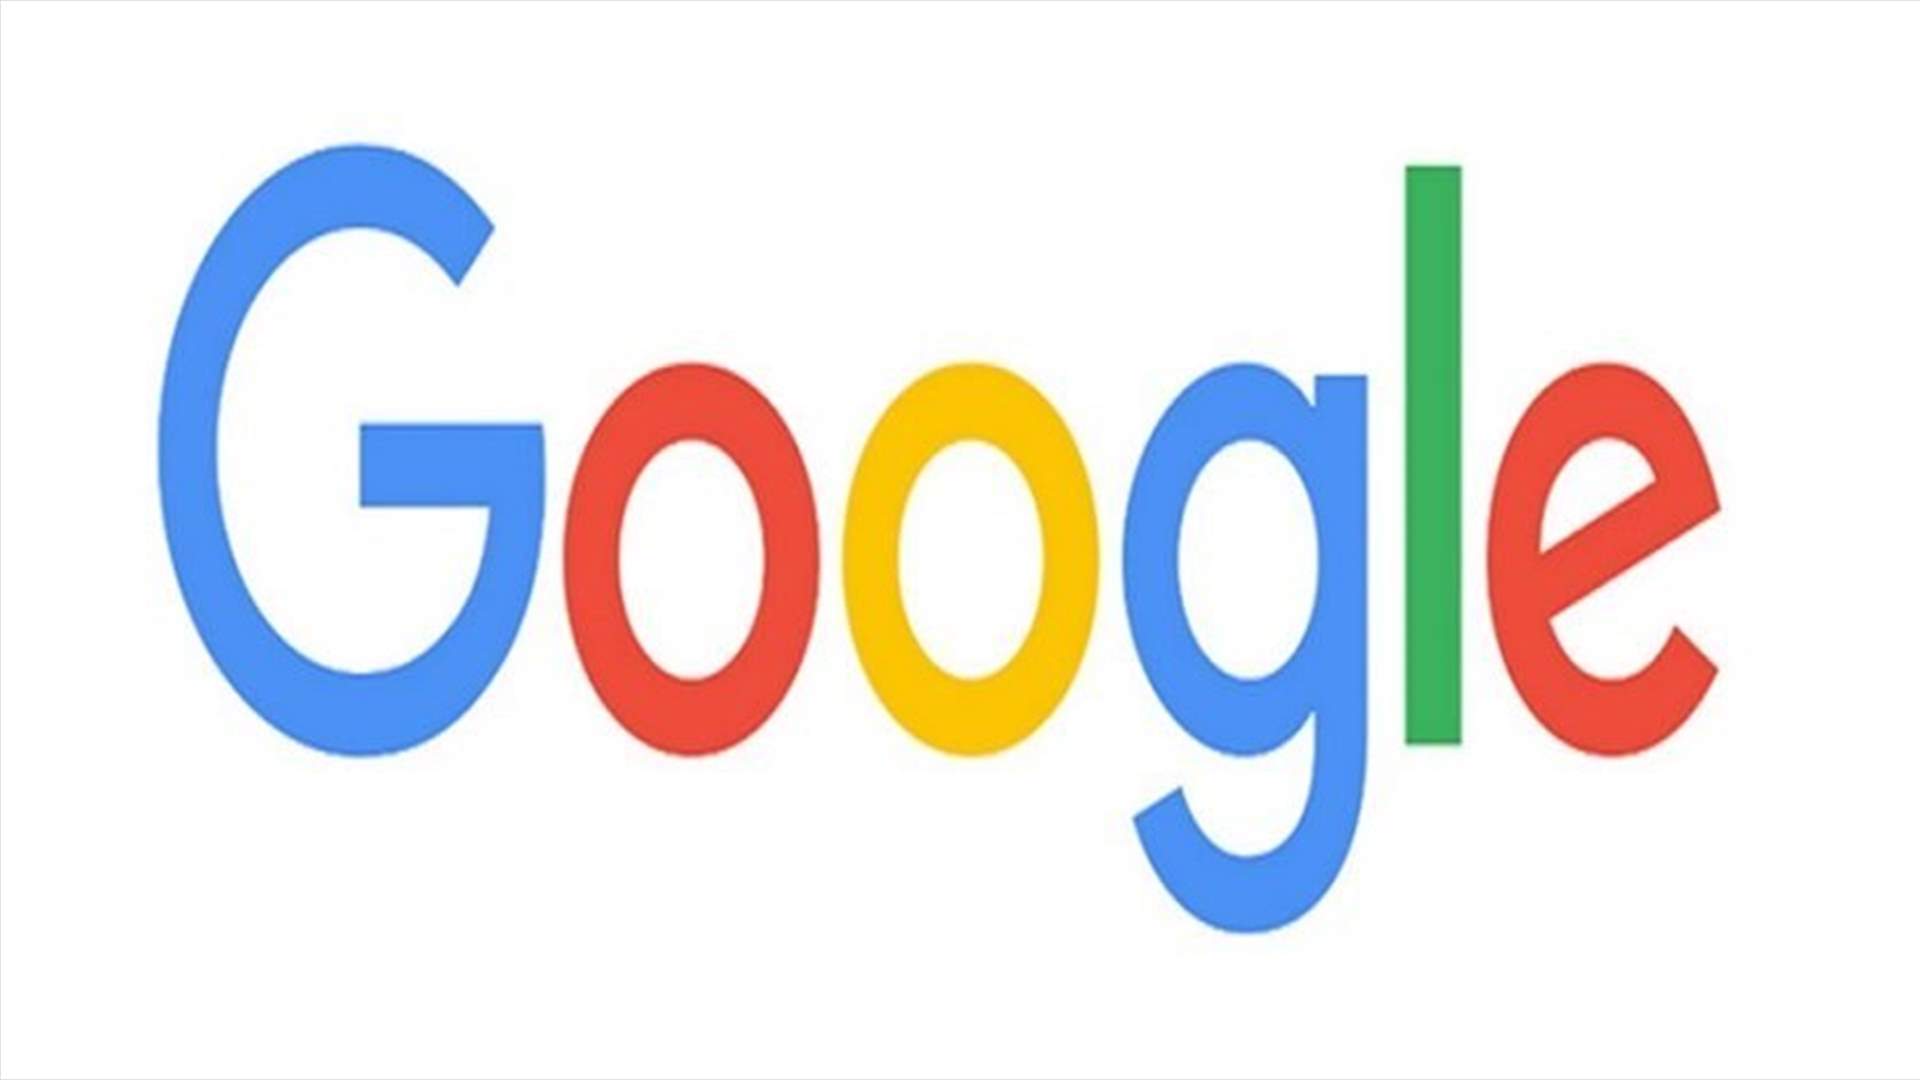 EU regulators fine Google record $5 bln in Android case